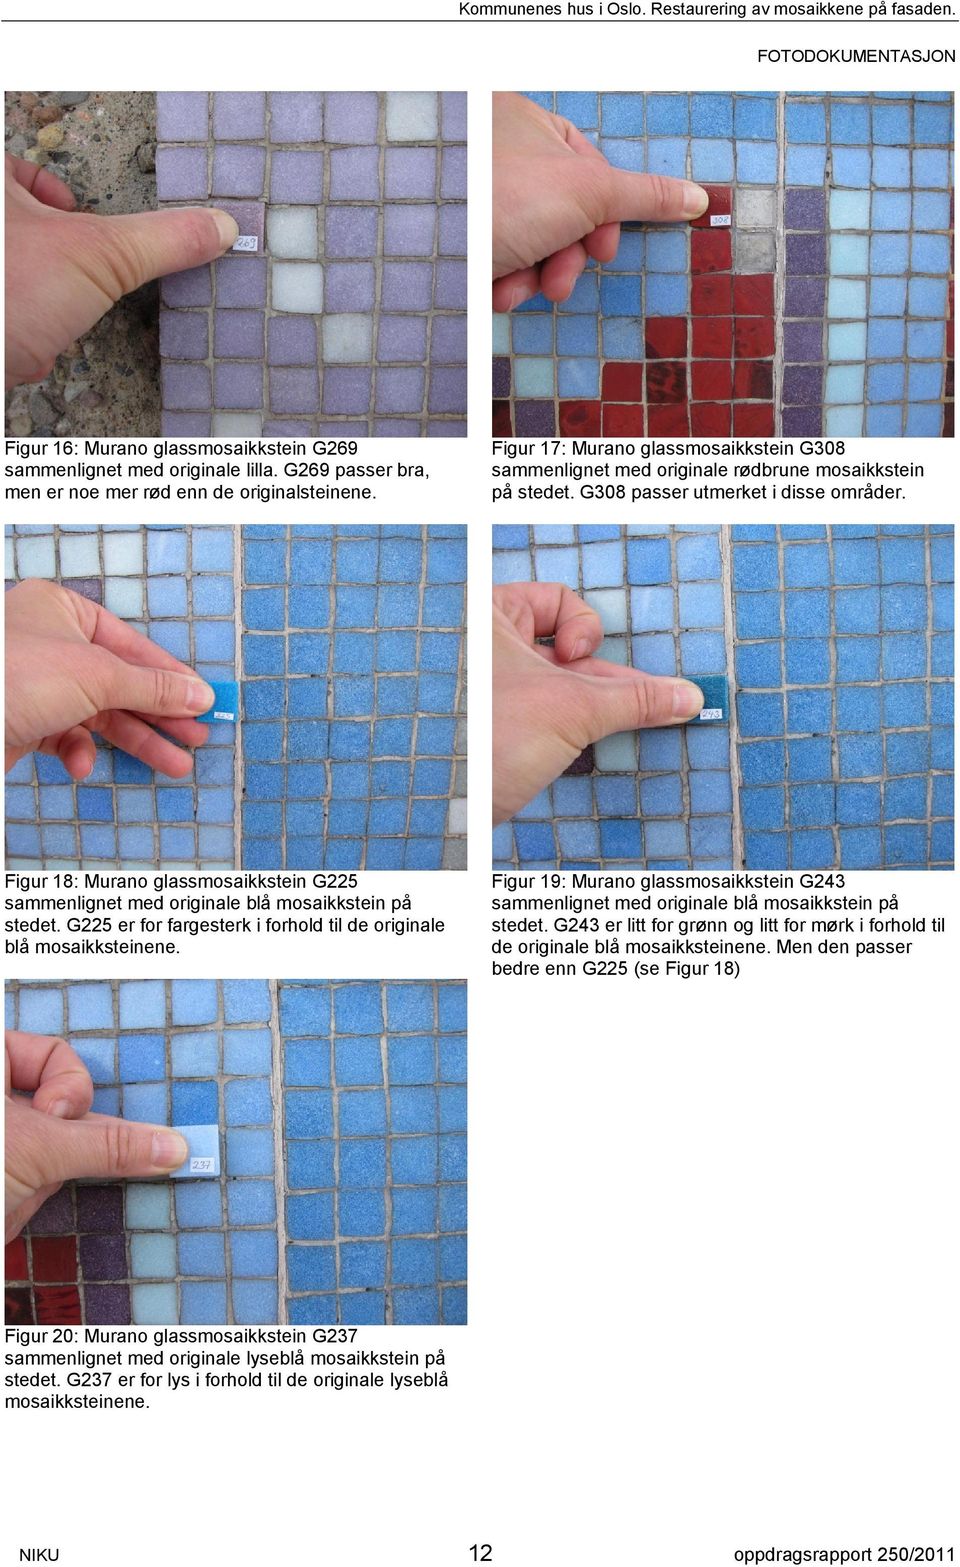 Figur 18: Murano glassmosaikkstein G225 sammenlignet med originale blå mosaikkstein på stedet. G225 er for fargesterk i forhold til de originale blå mosaikksteinene.